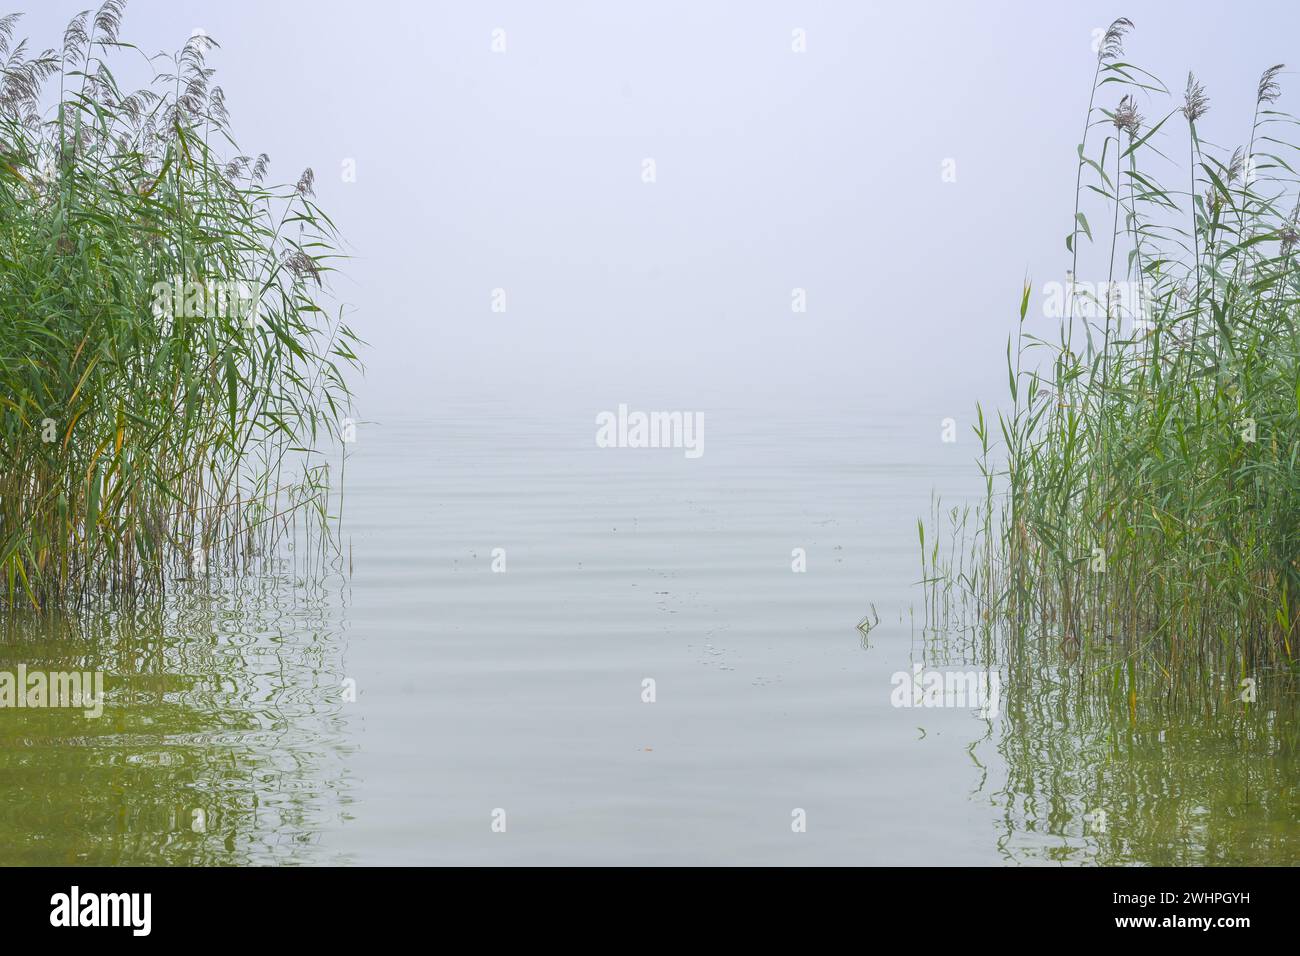 Vue à travers des roseaux verts sur un lac calme, l'horizon de l'eau disparaît dans la brume, concept d'environnement, copie de paysage naturel Banque D'Images